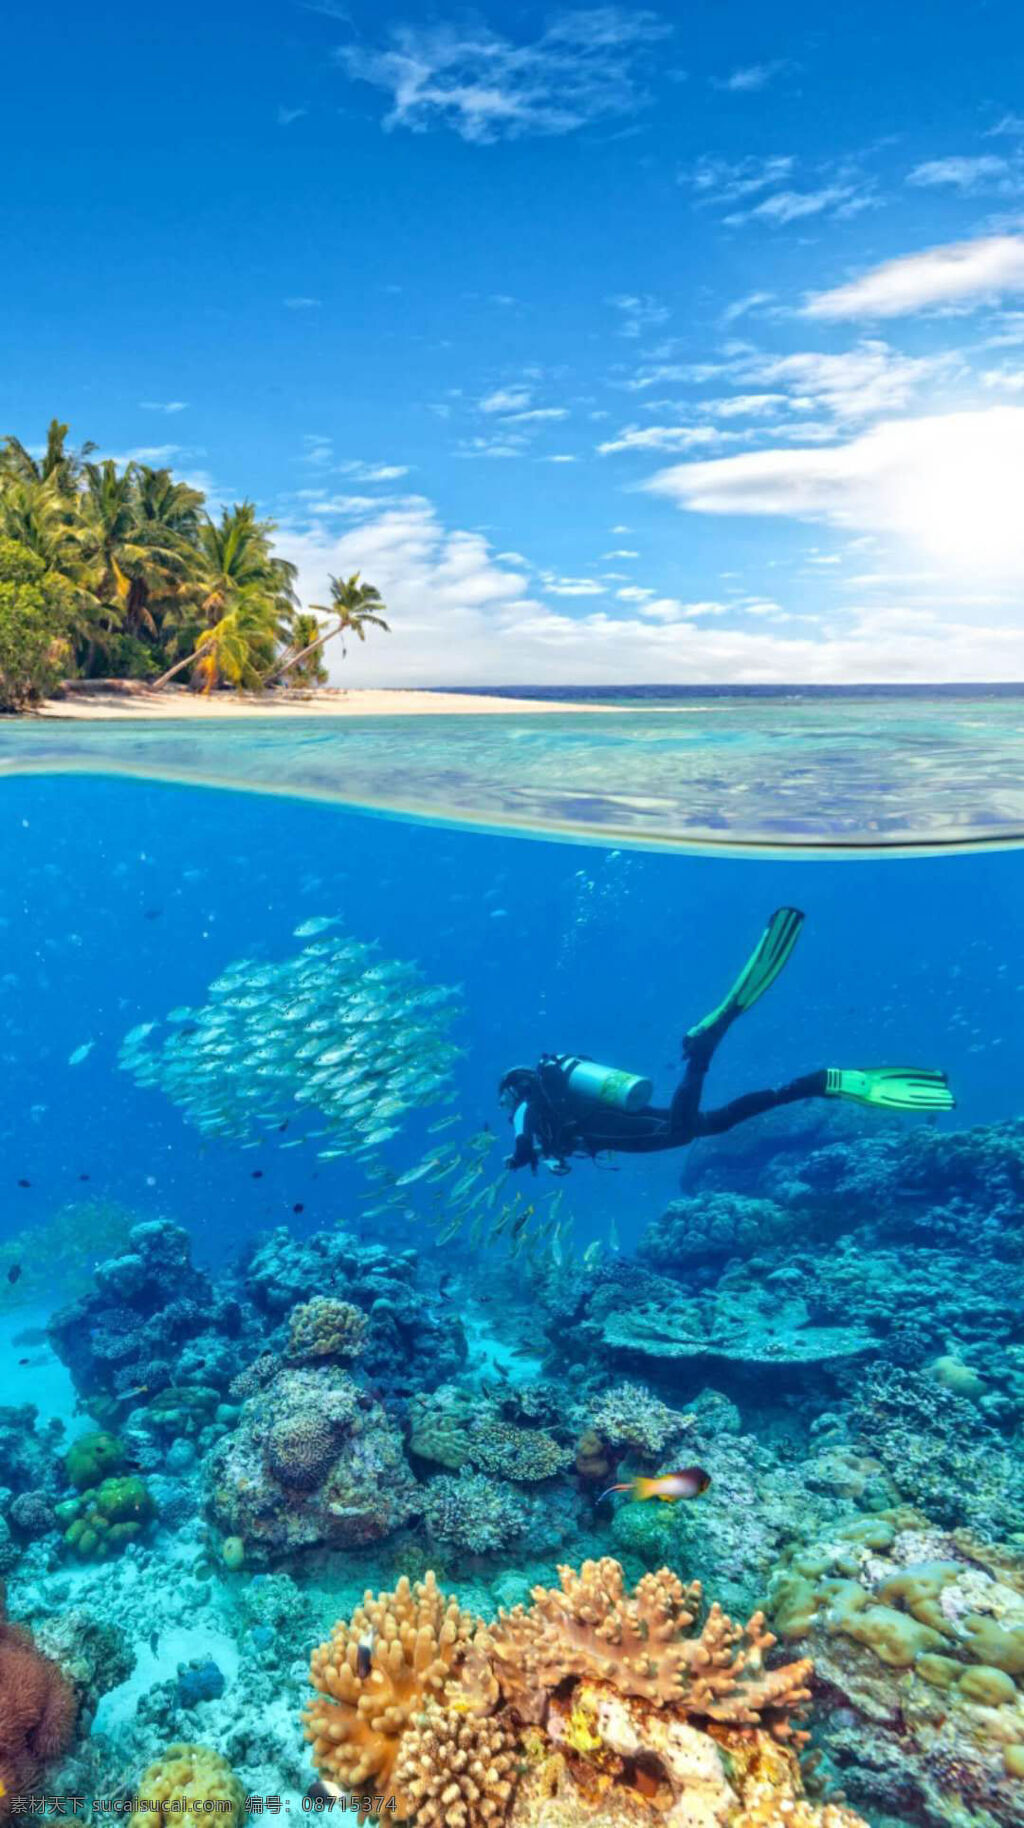 美丽 海洋 风景 蔚蓝的天空 雪白的云彩 绿树 椰子树 大海 碧蓝的海水 鱼群 美丽的珊瑚礁 潜水员 自然景观 自然风景